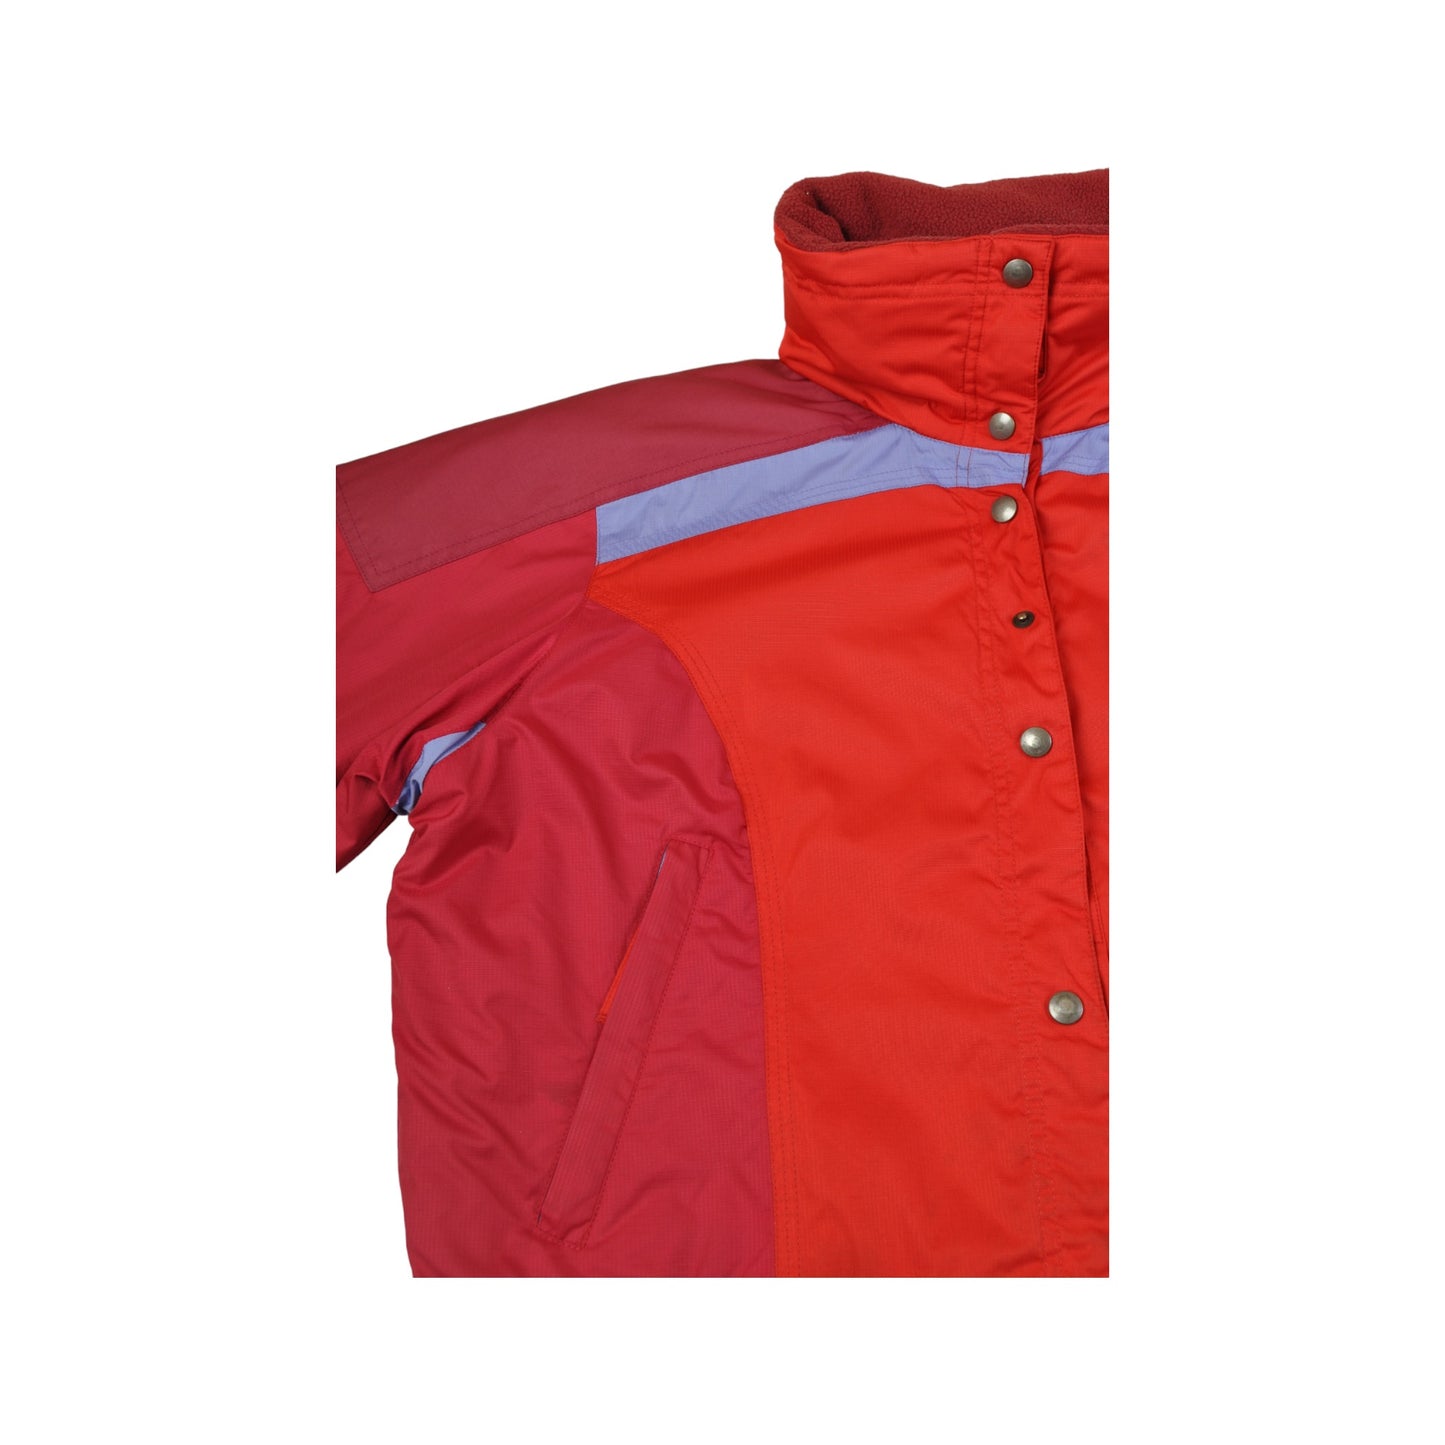 Vintage Degree 7 Ski Jacket Red Ladies Medium